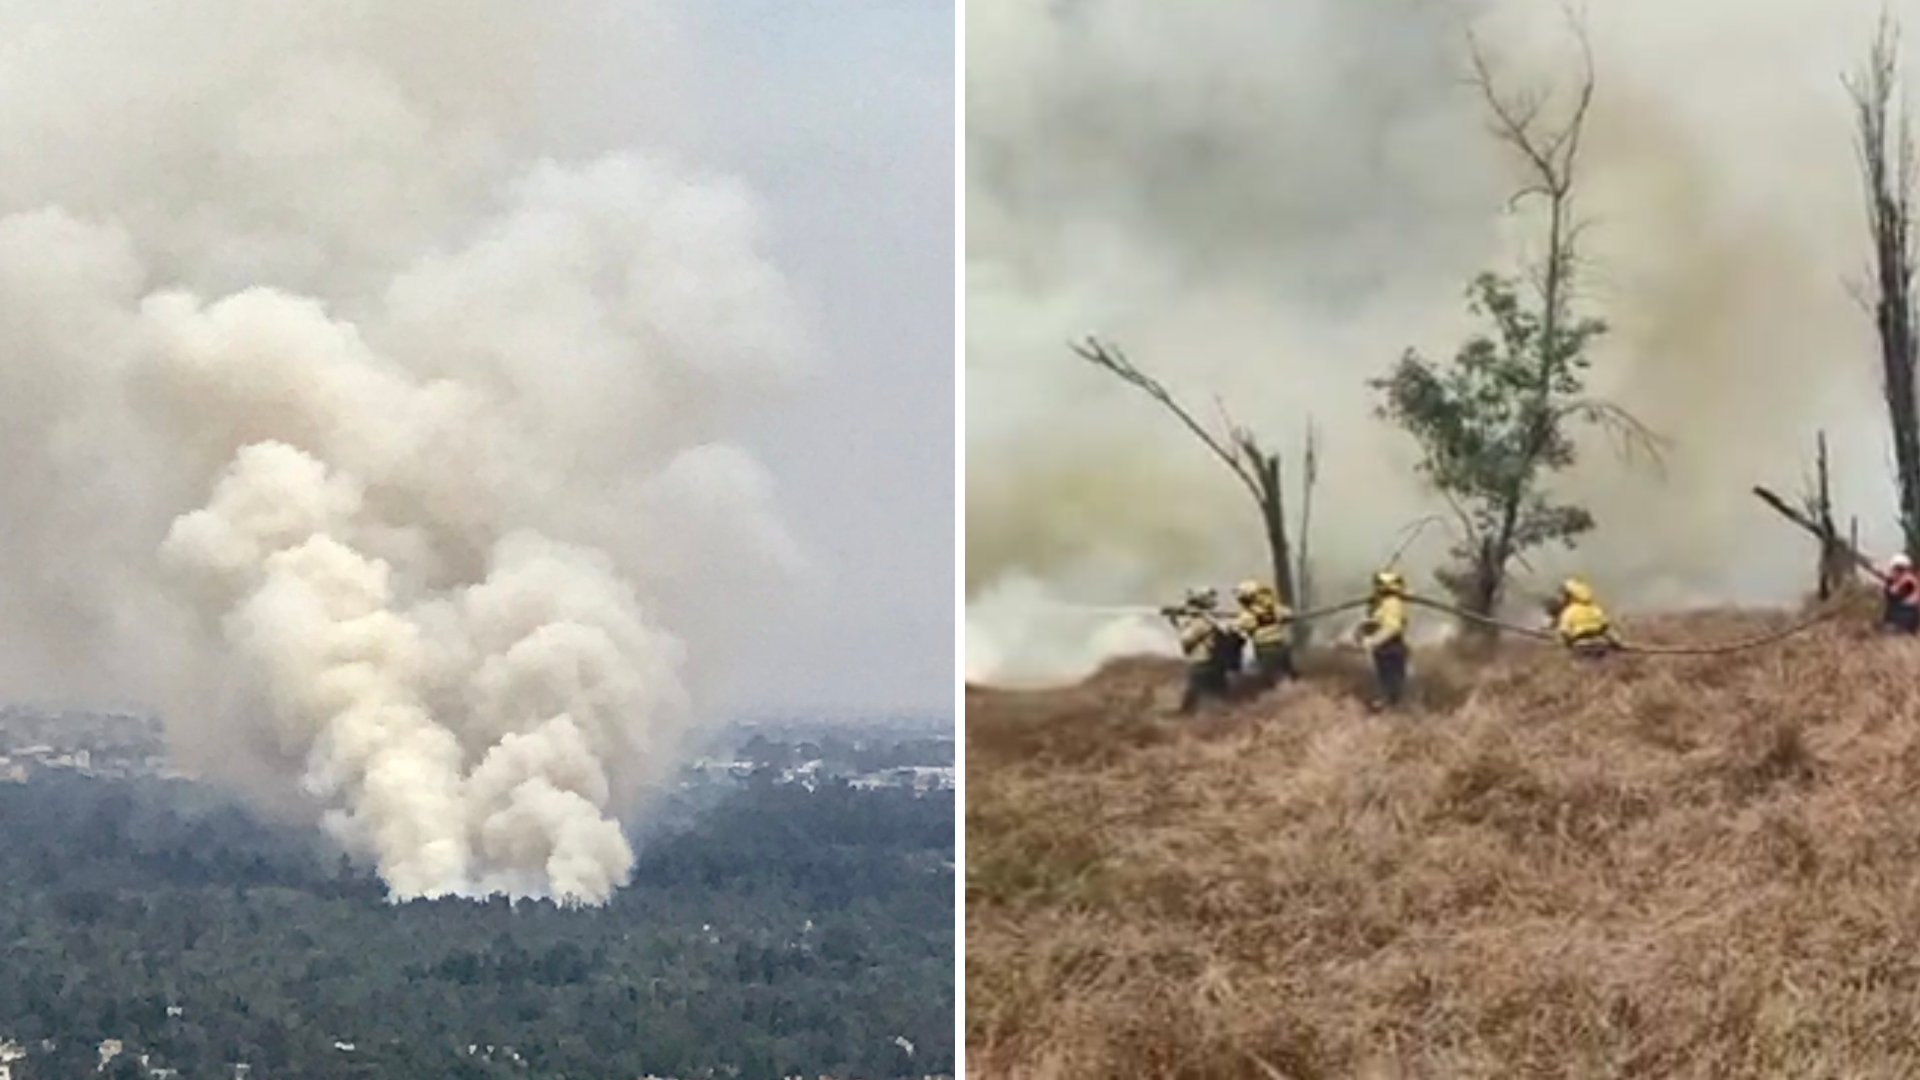 Fuerte incendio en el Parque Ecológico de Xochimilco provocó una gran columna de humo